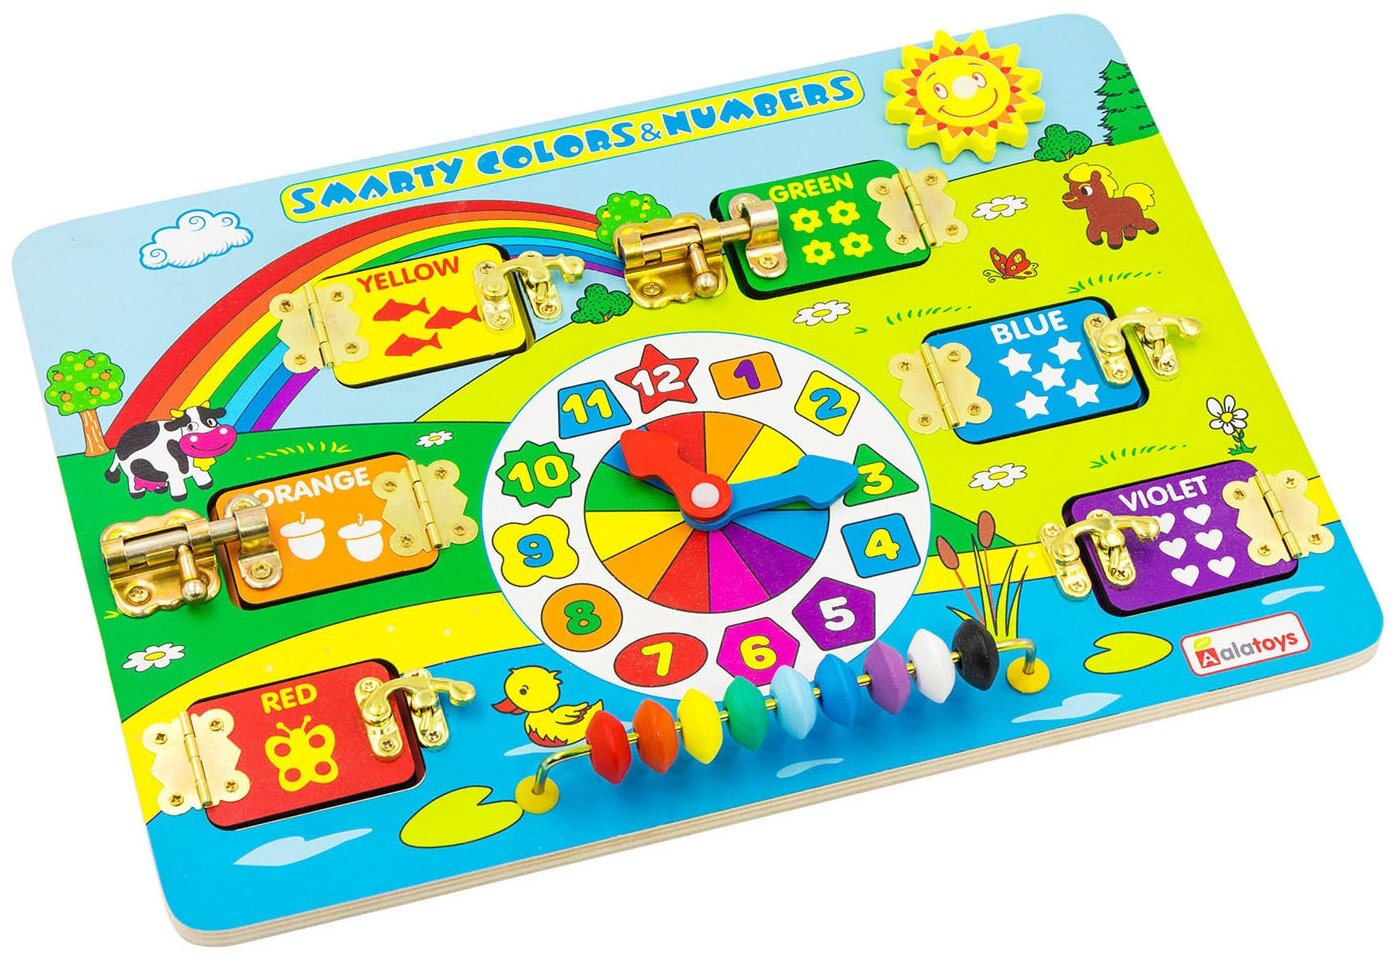 Бизиборд "Smarty colors & Numbers" Деревянная развивающая игрушка из натуральных материалов, безопасна для детей